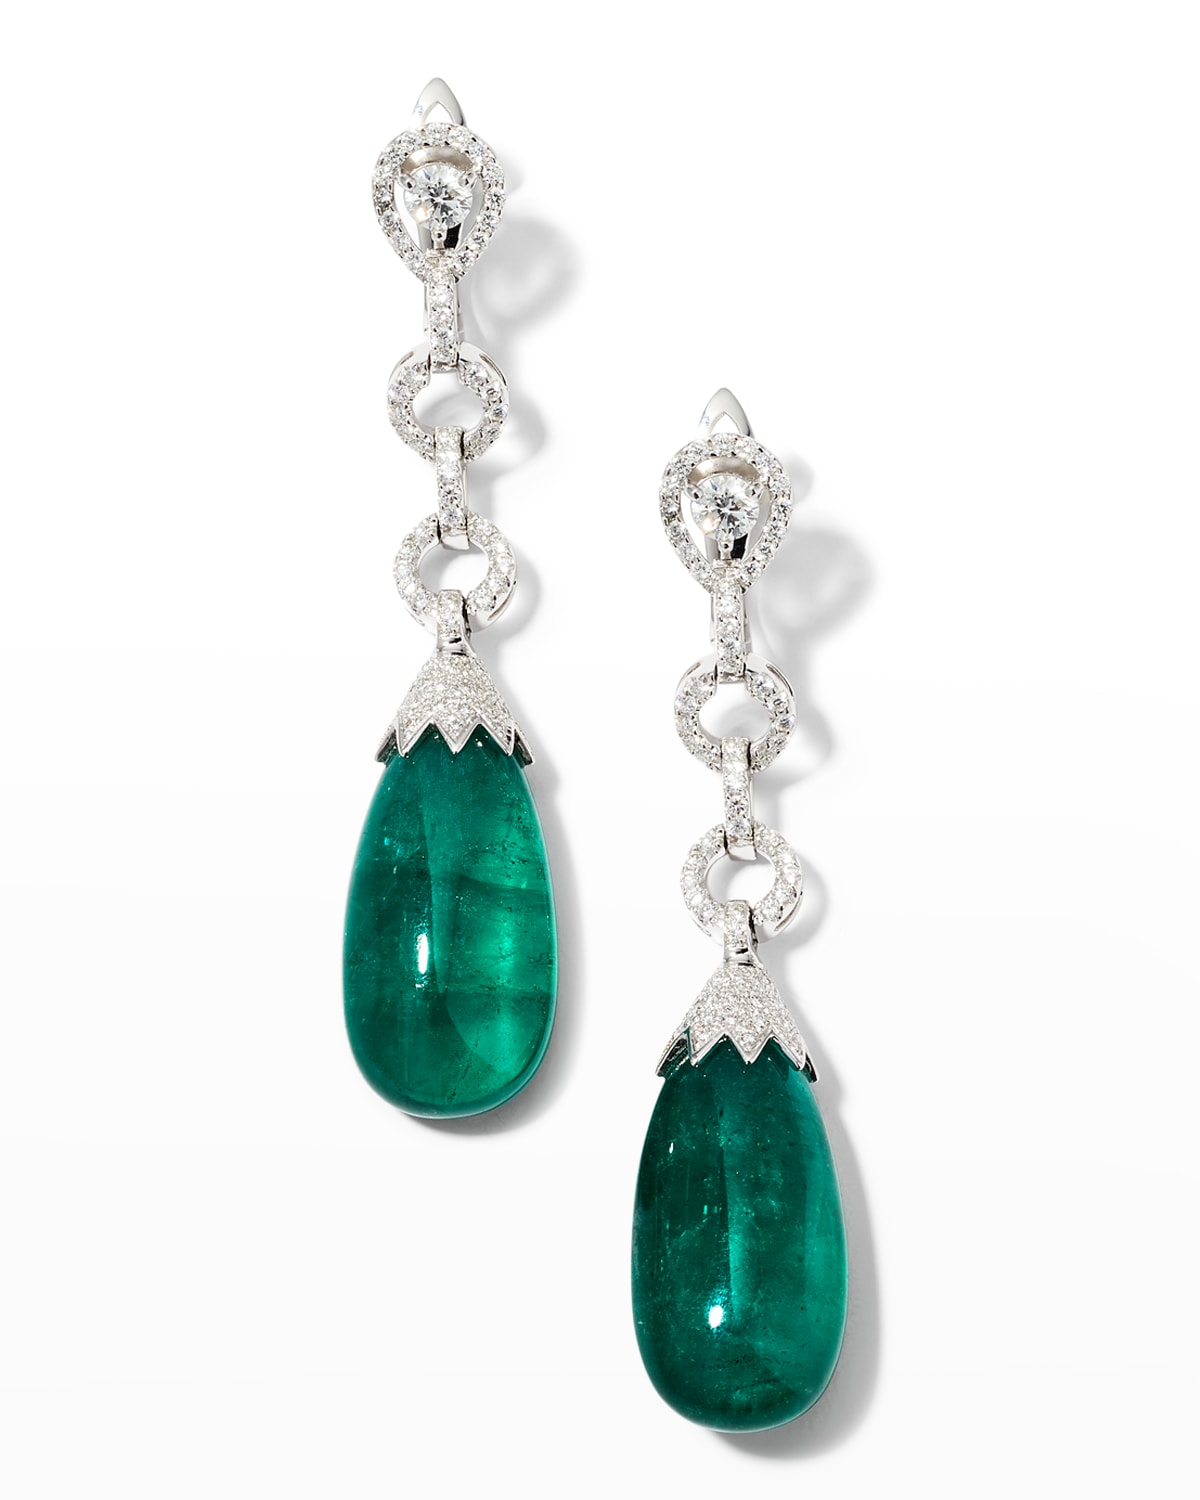 Alexander Laut White Gold Teardrop Zambian Emerald and Diamond Earrings